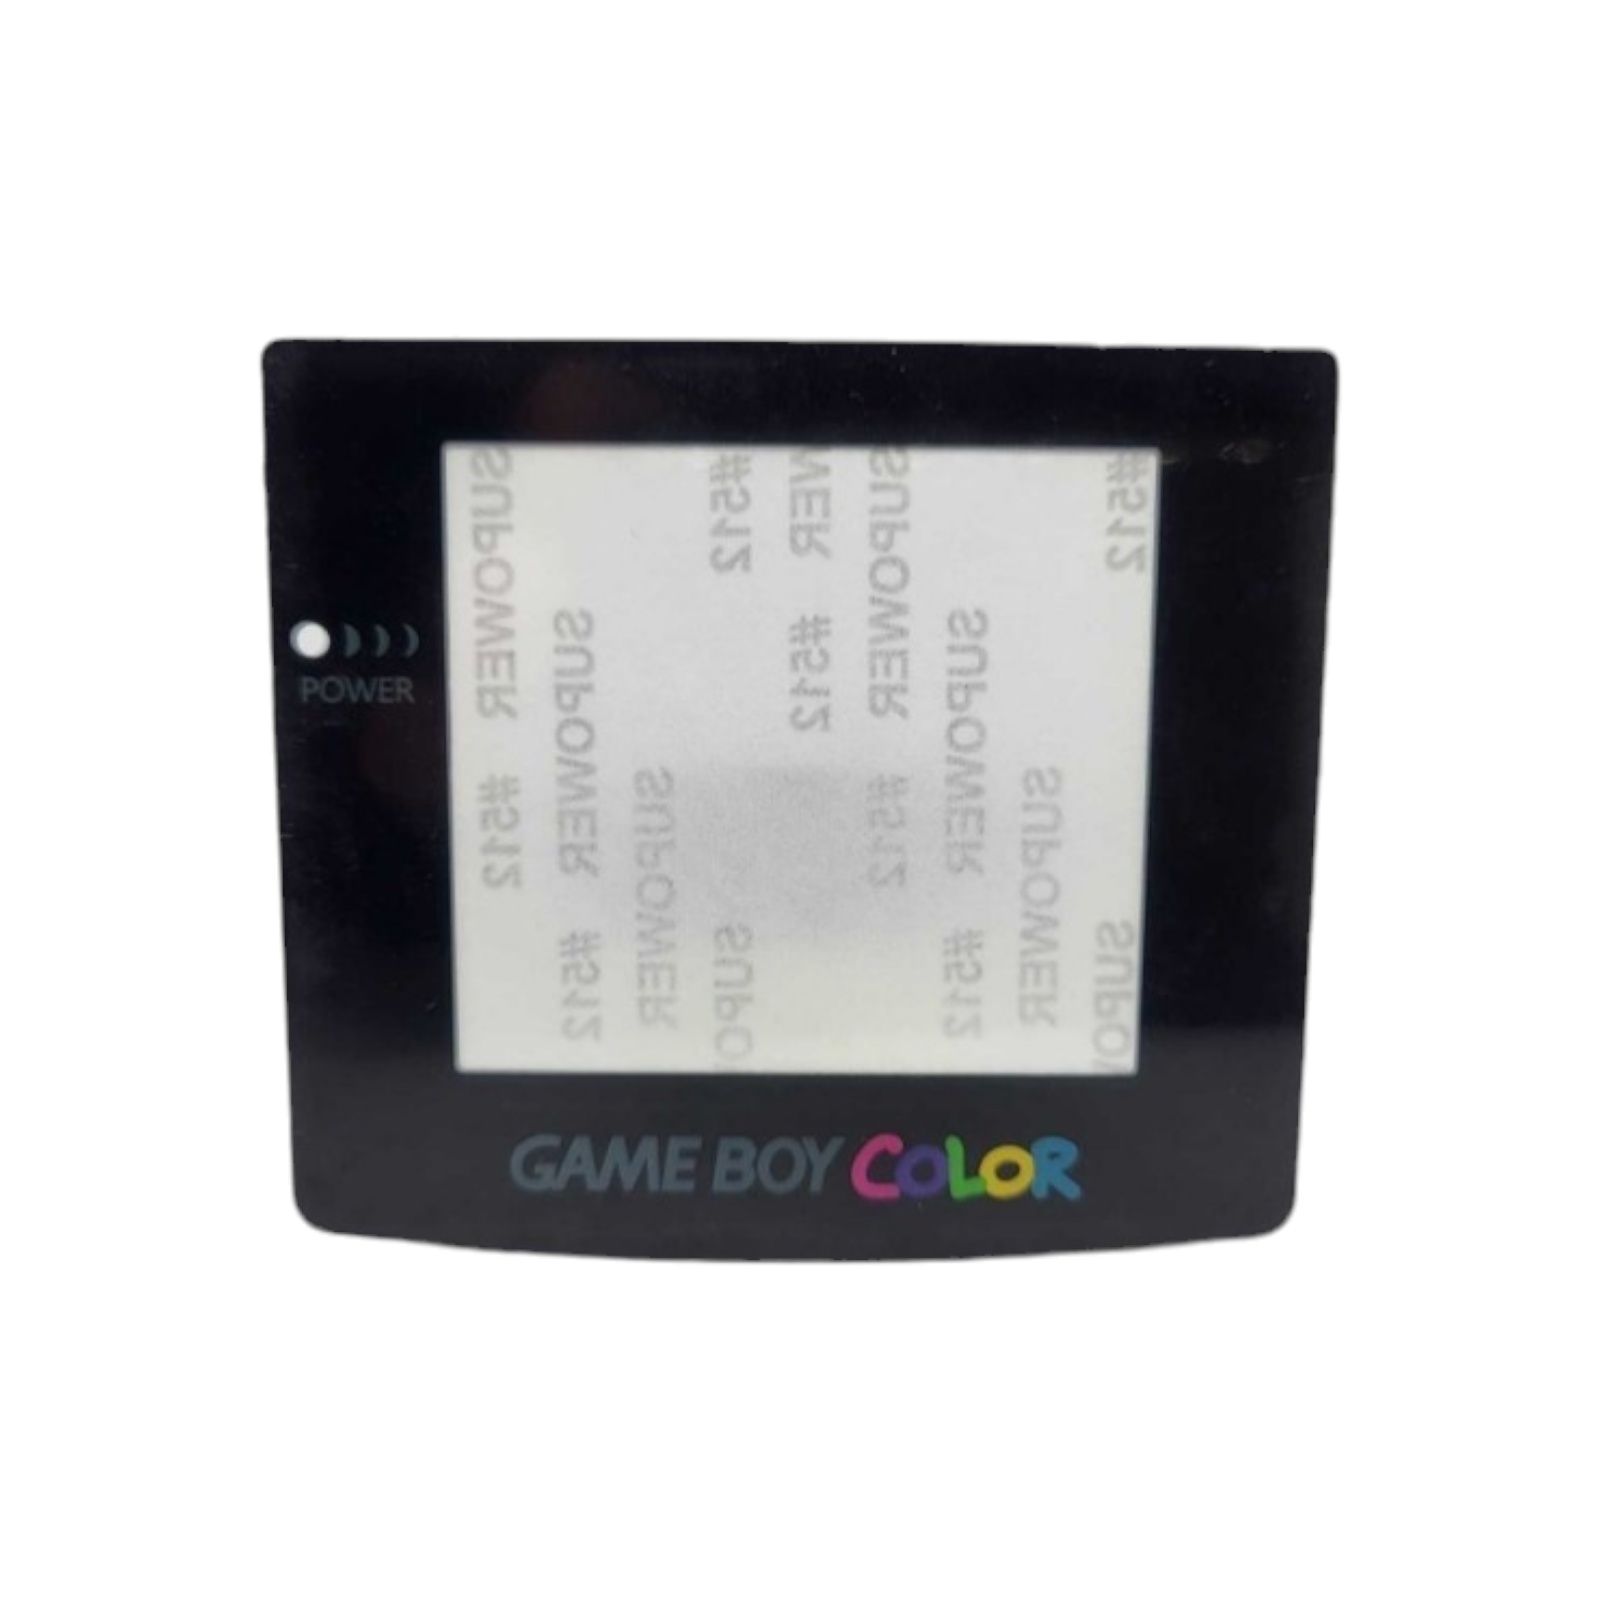 Szybka osłona ekranu Game Boy Gameboy Color